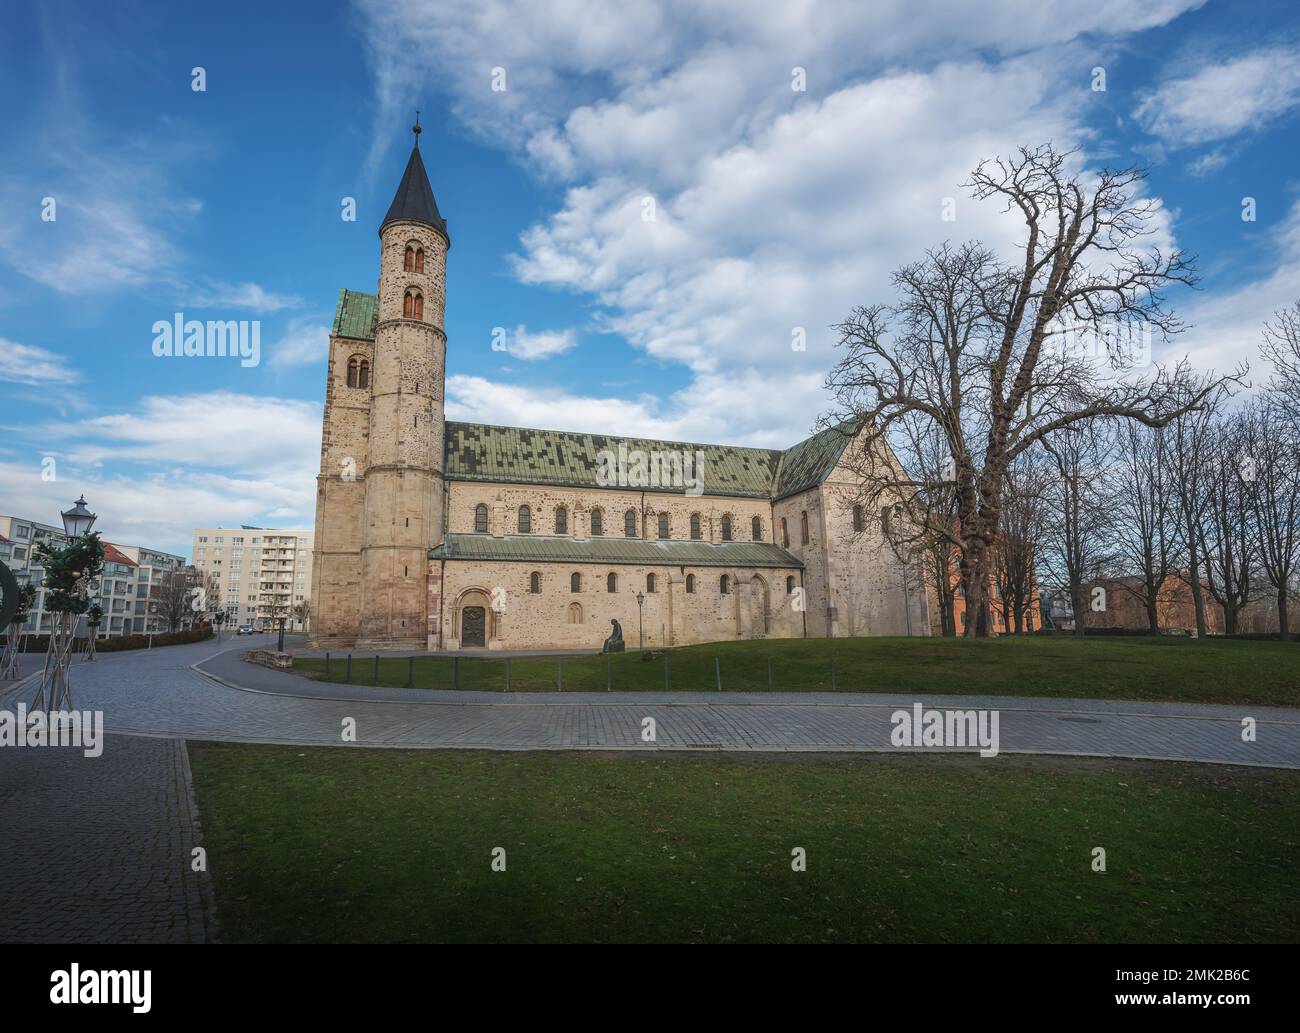 Monastery Church (Kloster Unser Lieben Frauen) - Magdeburg, Saxony-Anhalt, Germany Stock Photo